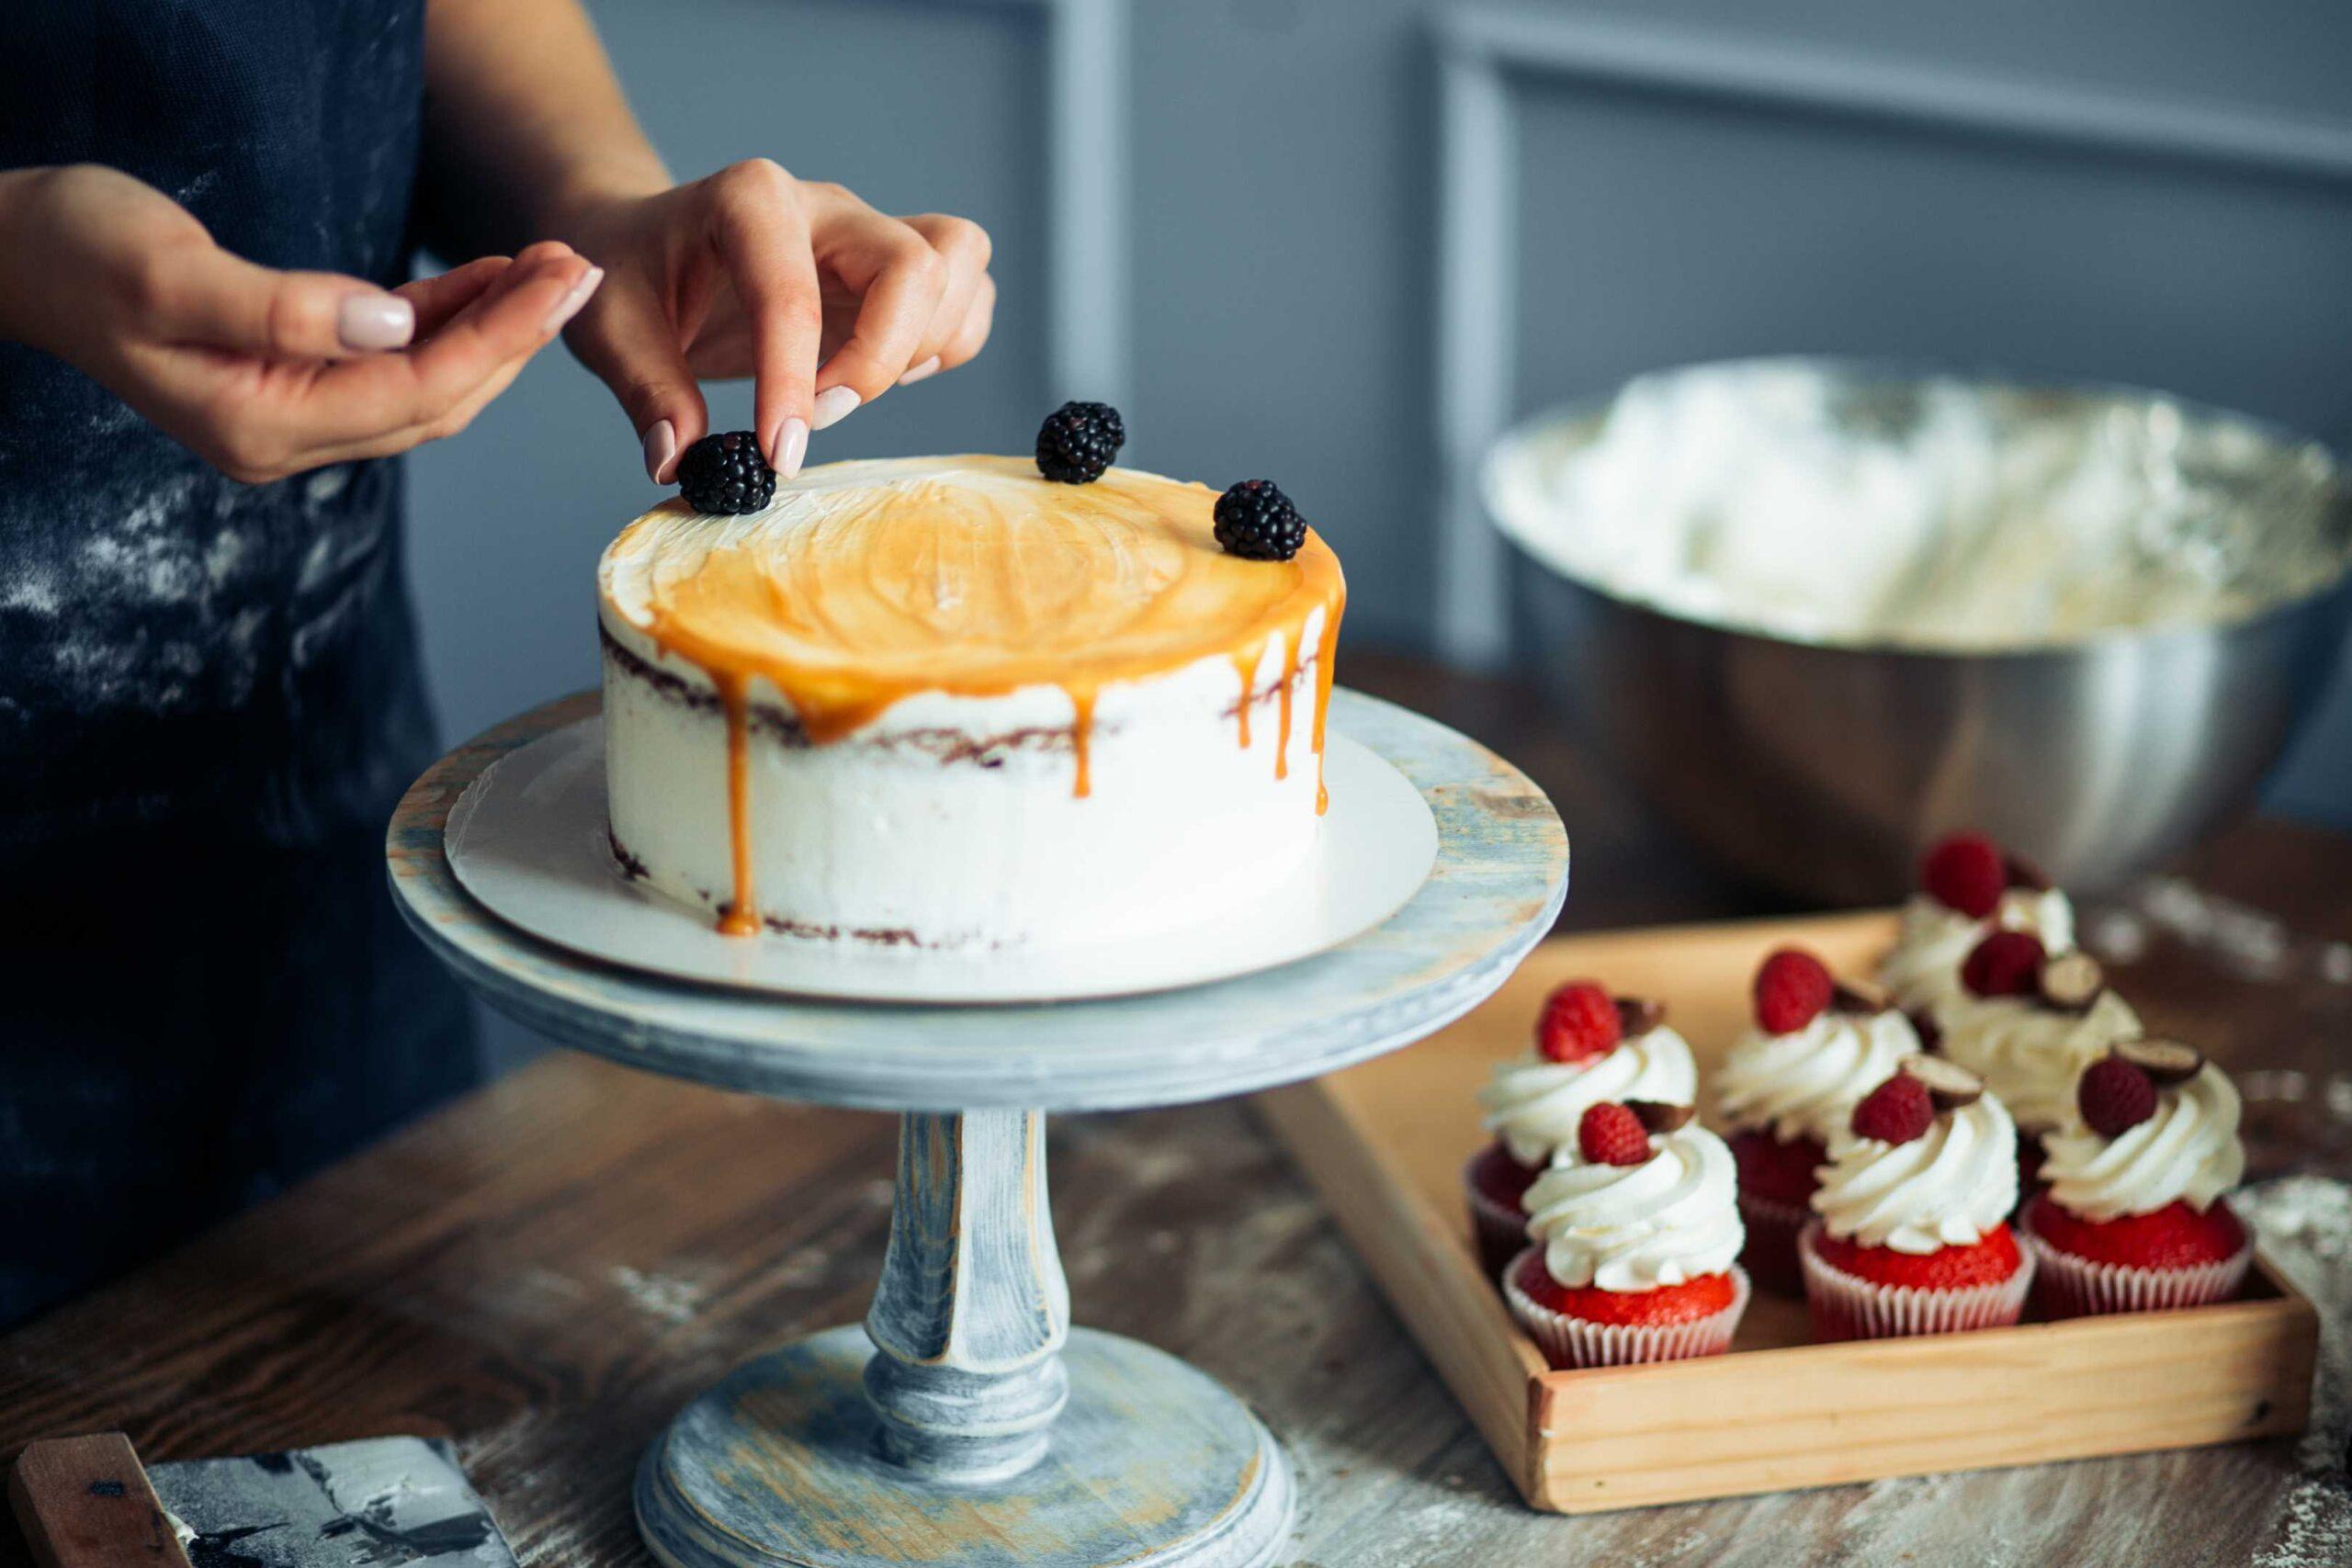 Советы и рекомендации по началу собственного бизнеса по выпечке тортов на дому